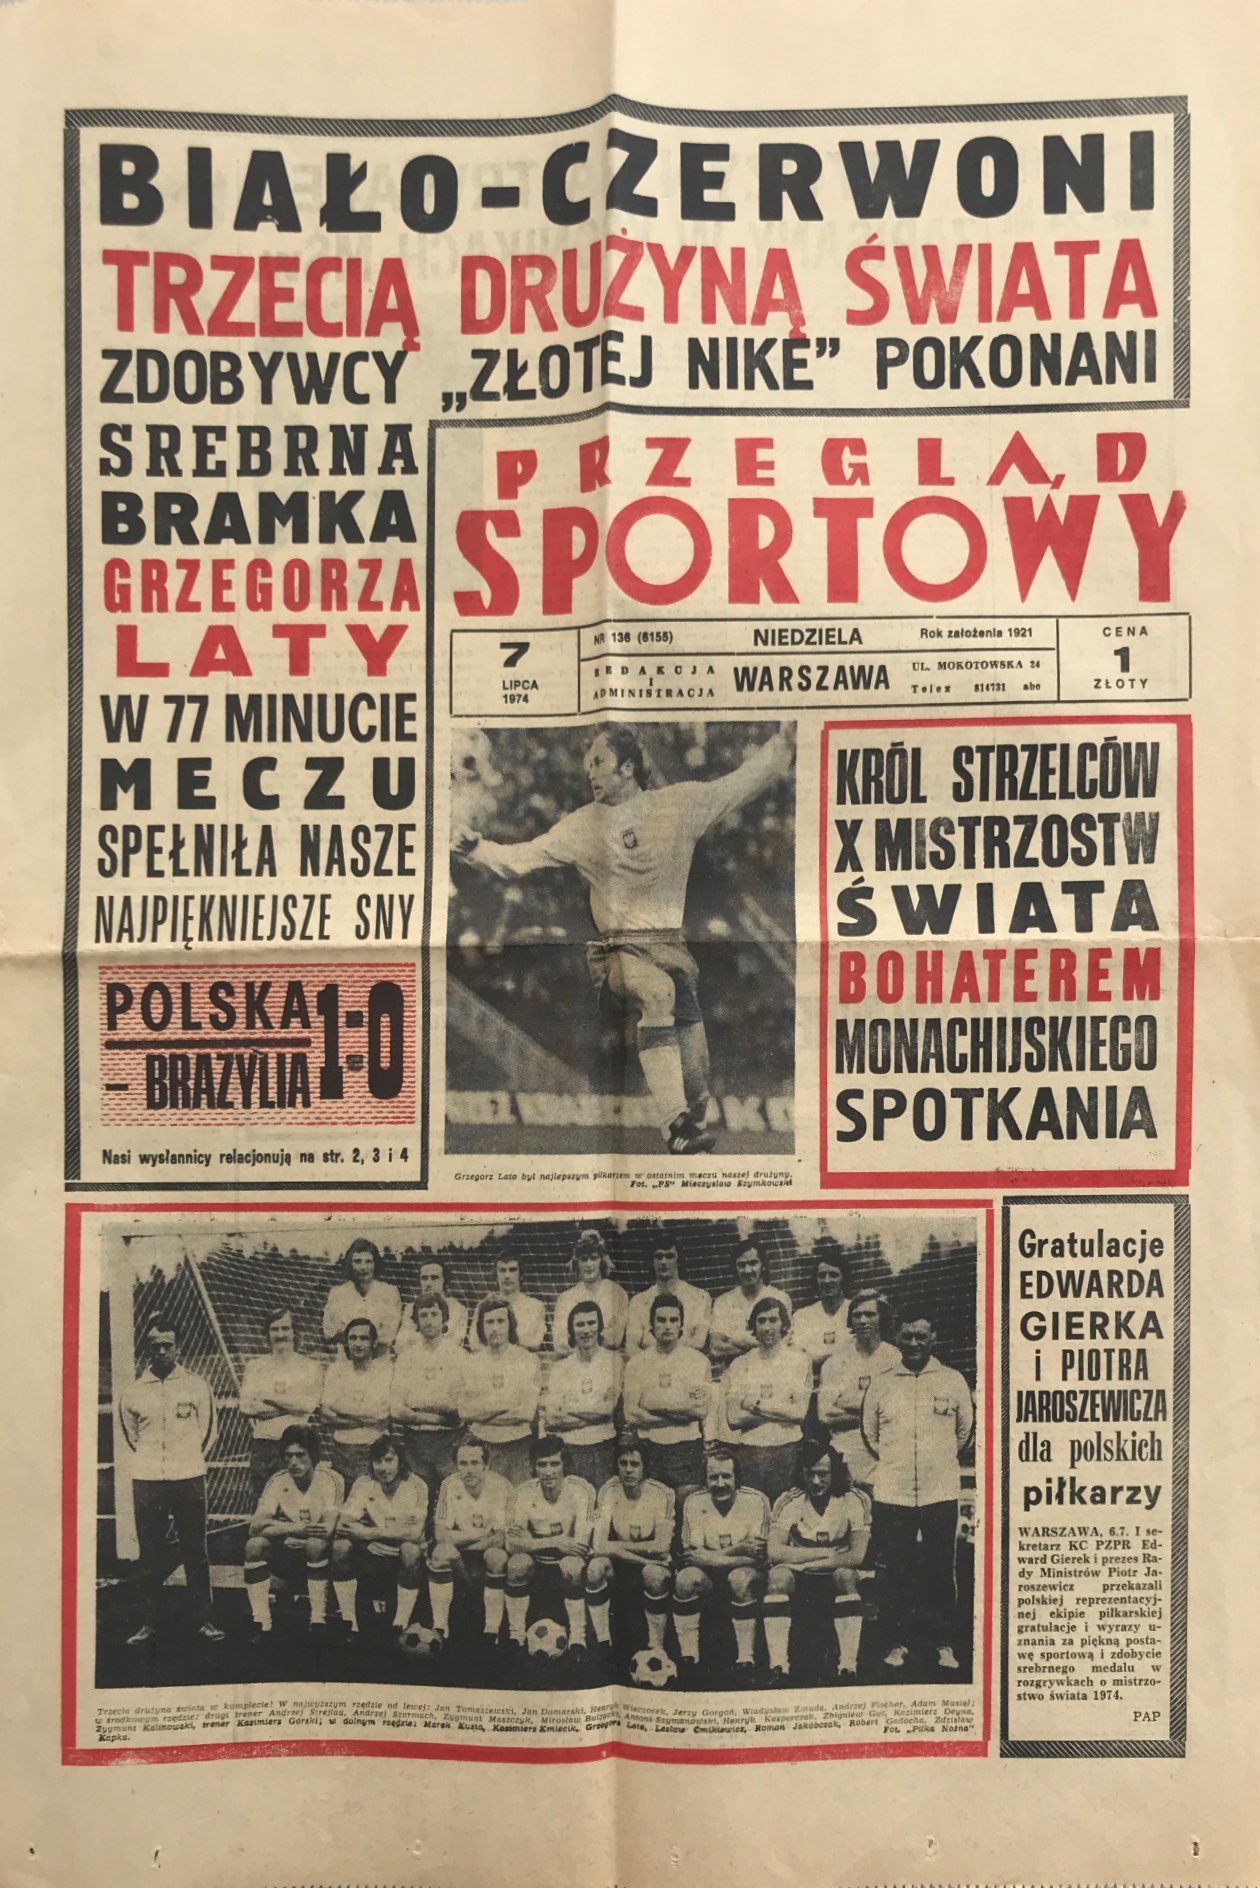 Przegląd Sportowy po meczu Polska - Brazylia 1:0 (06.07.1974).